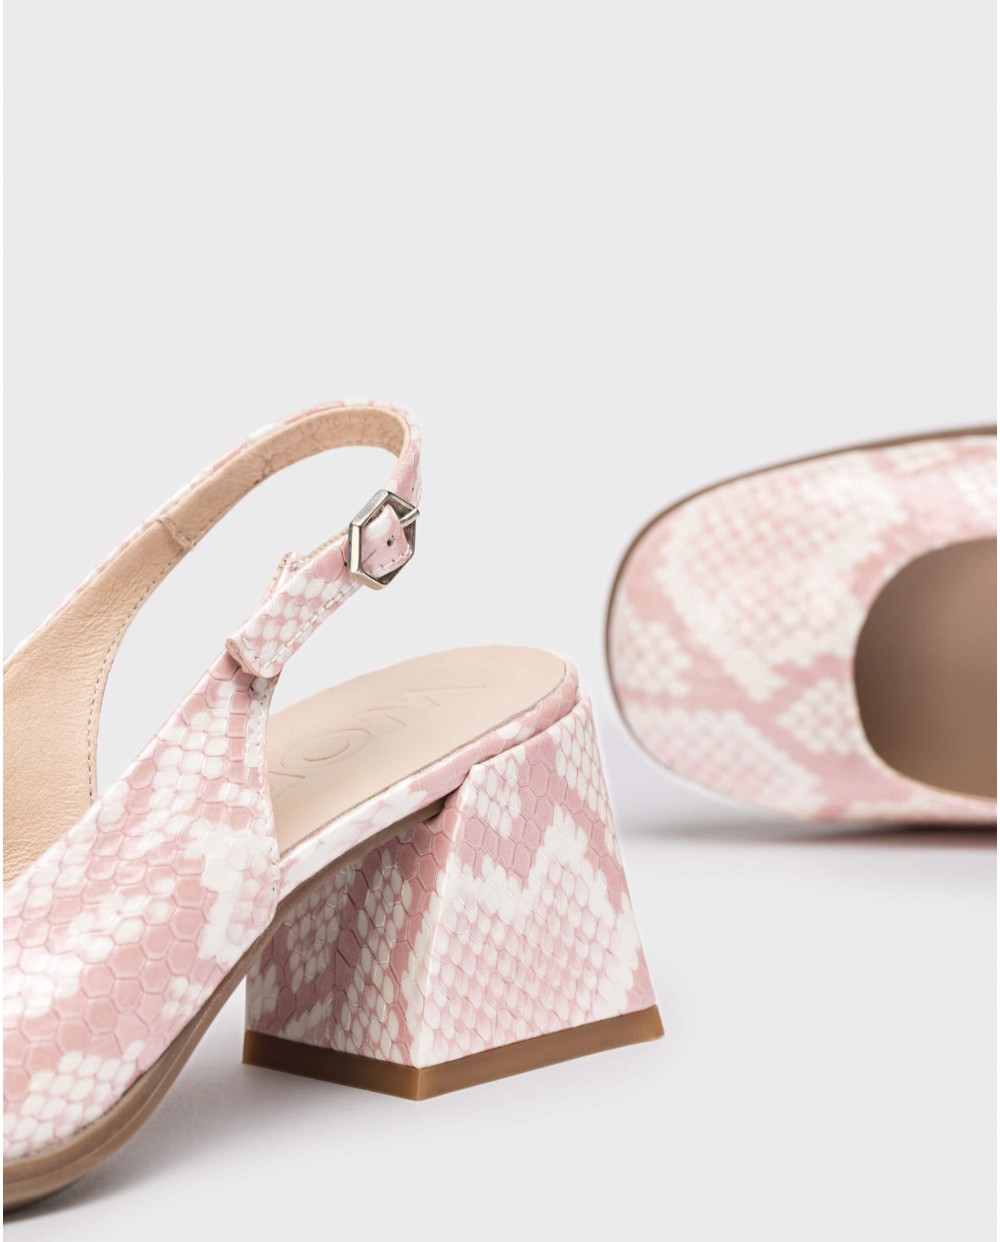 Wonders-Heels-Pink Adele shoes